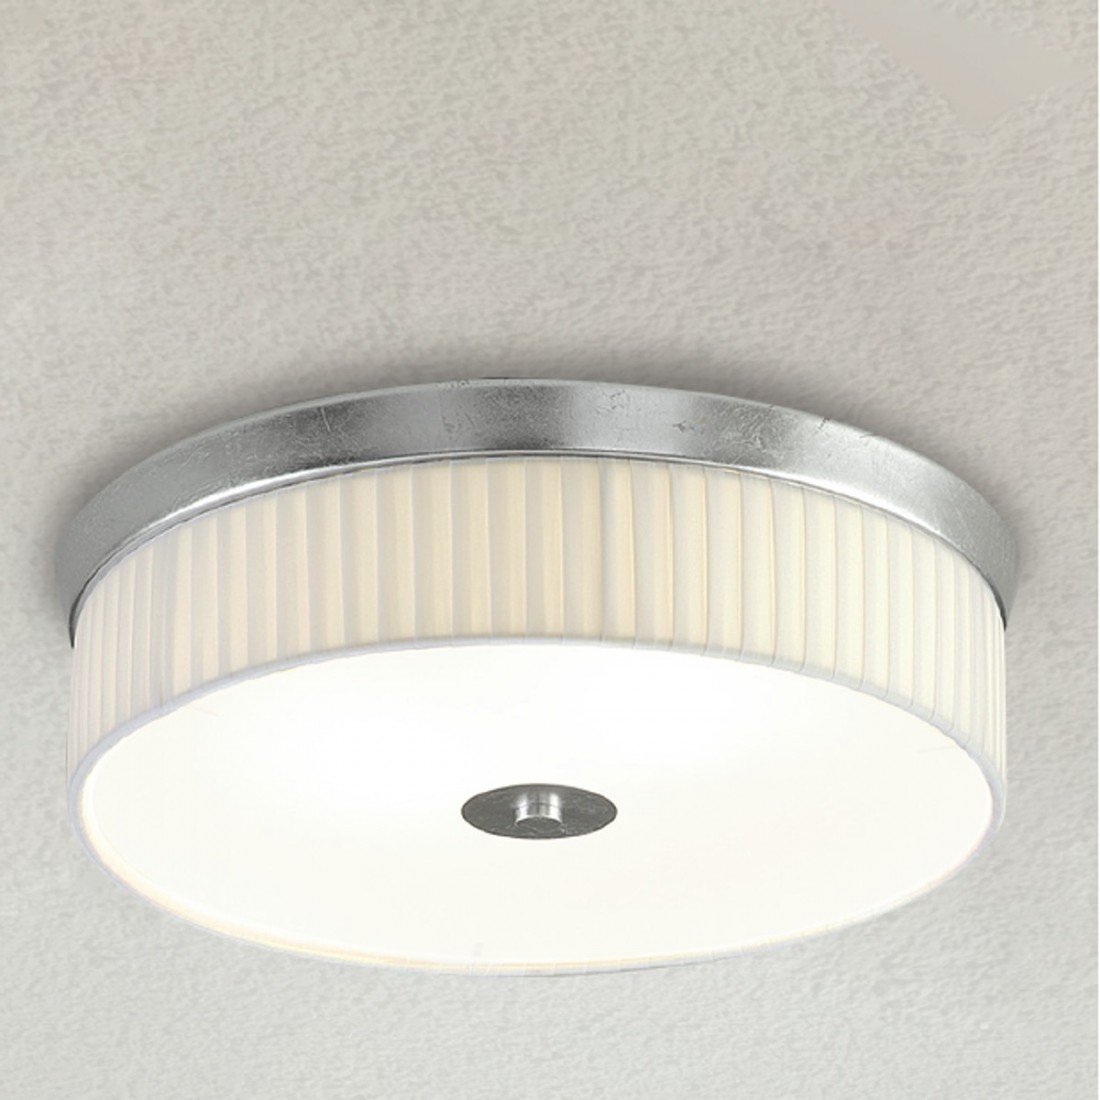 Plafoniera LM-6985 E27 LED classica metallo tessuto plissettato lampada soffitto interni